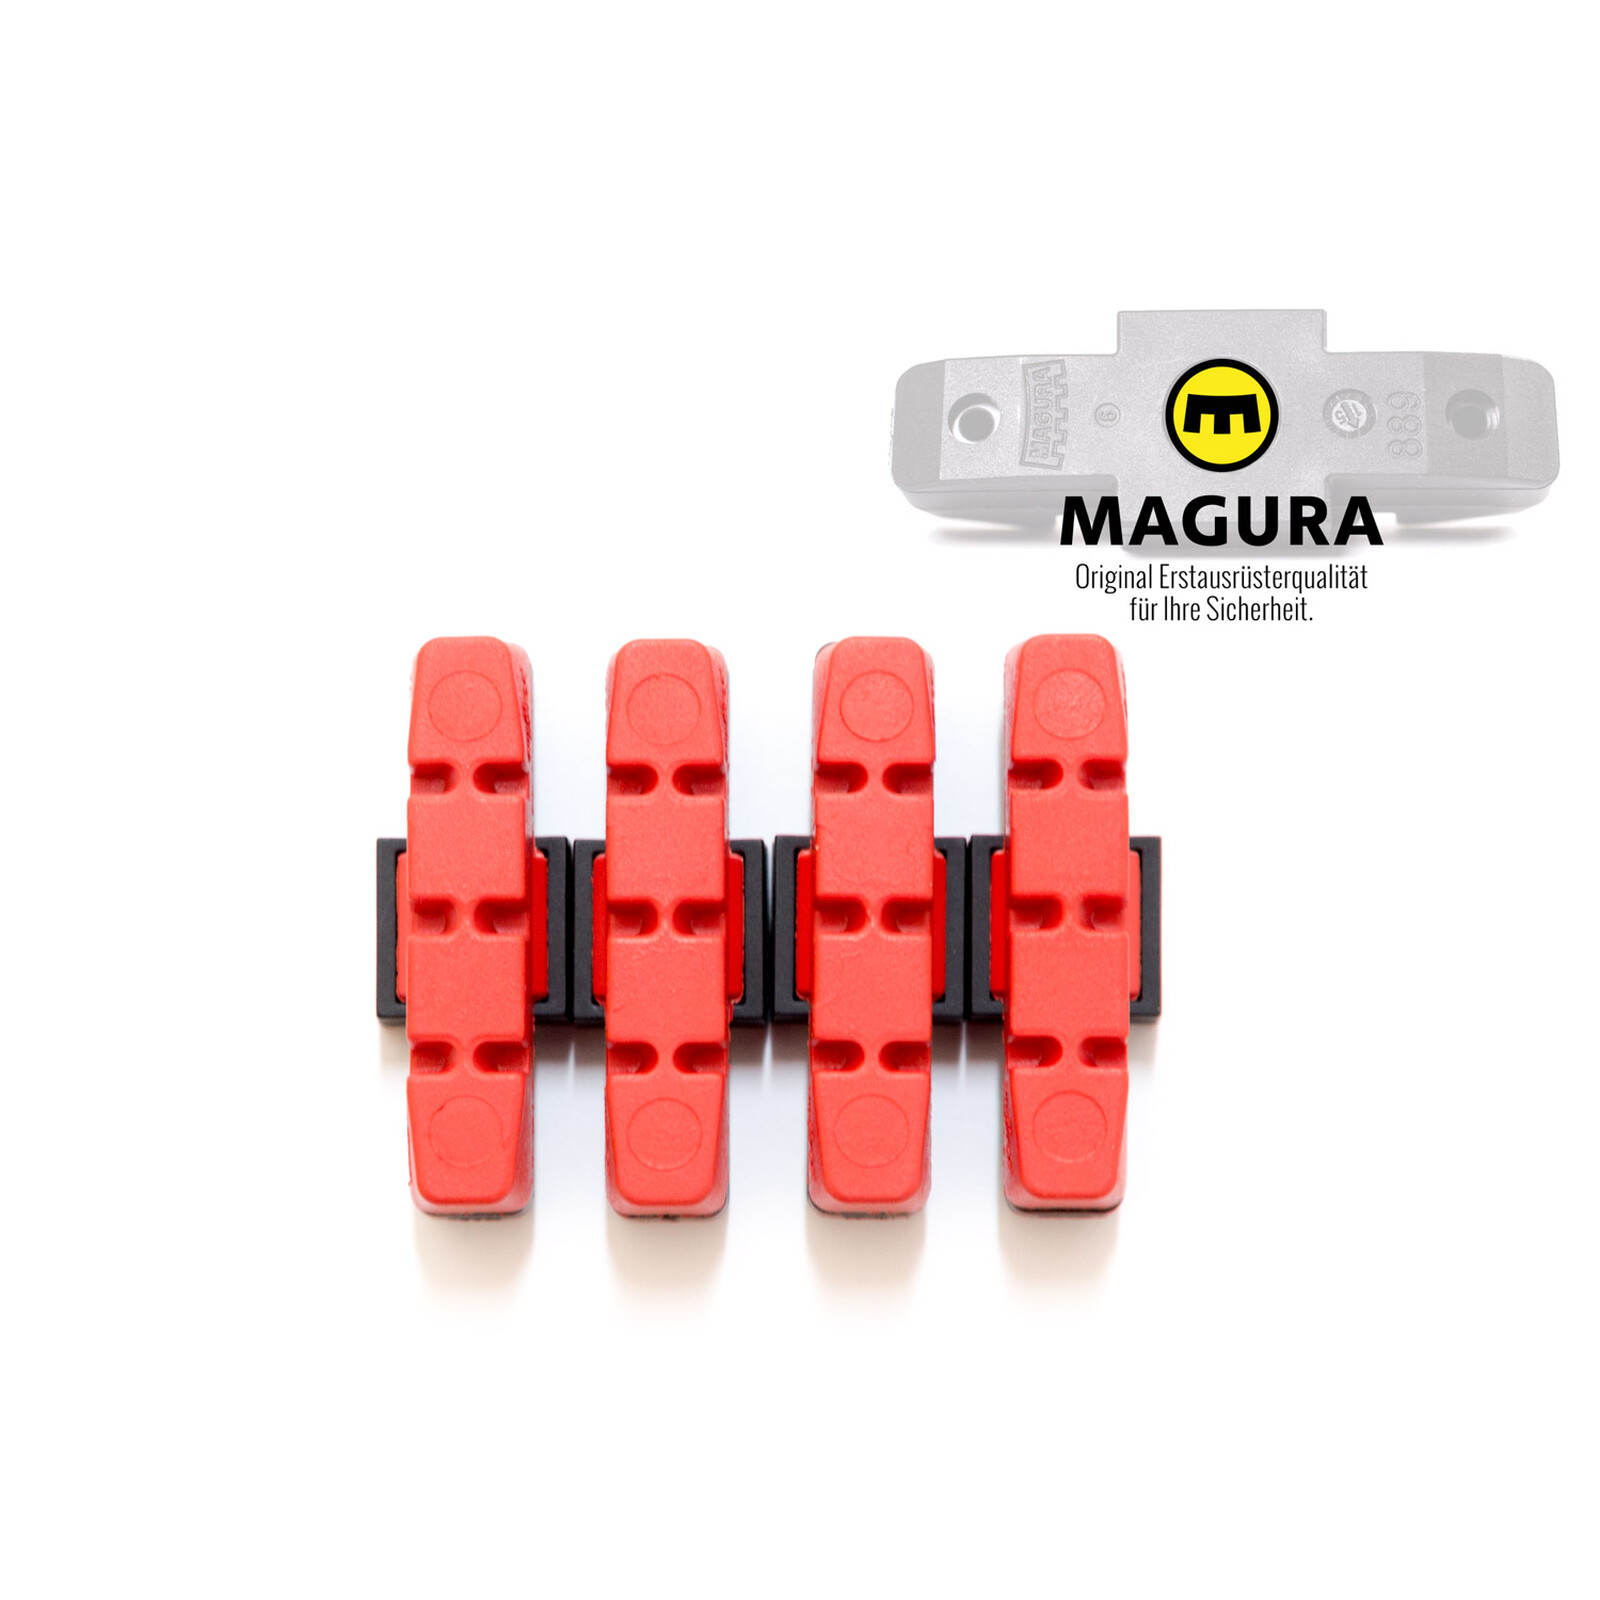 Magura T-Stück für HS11/HS33 - 2 Bremsen auf 1 Bremshebel kaufen bei HBS